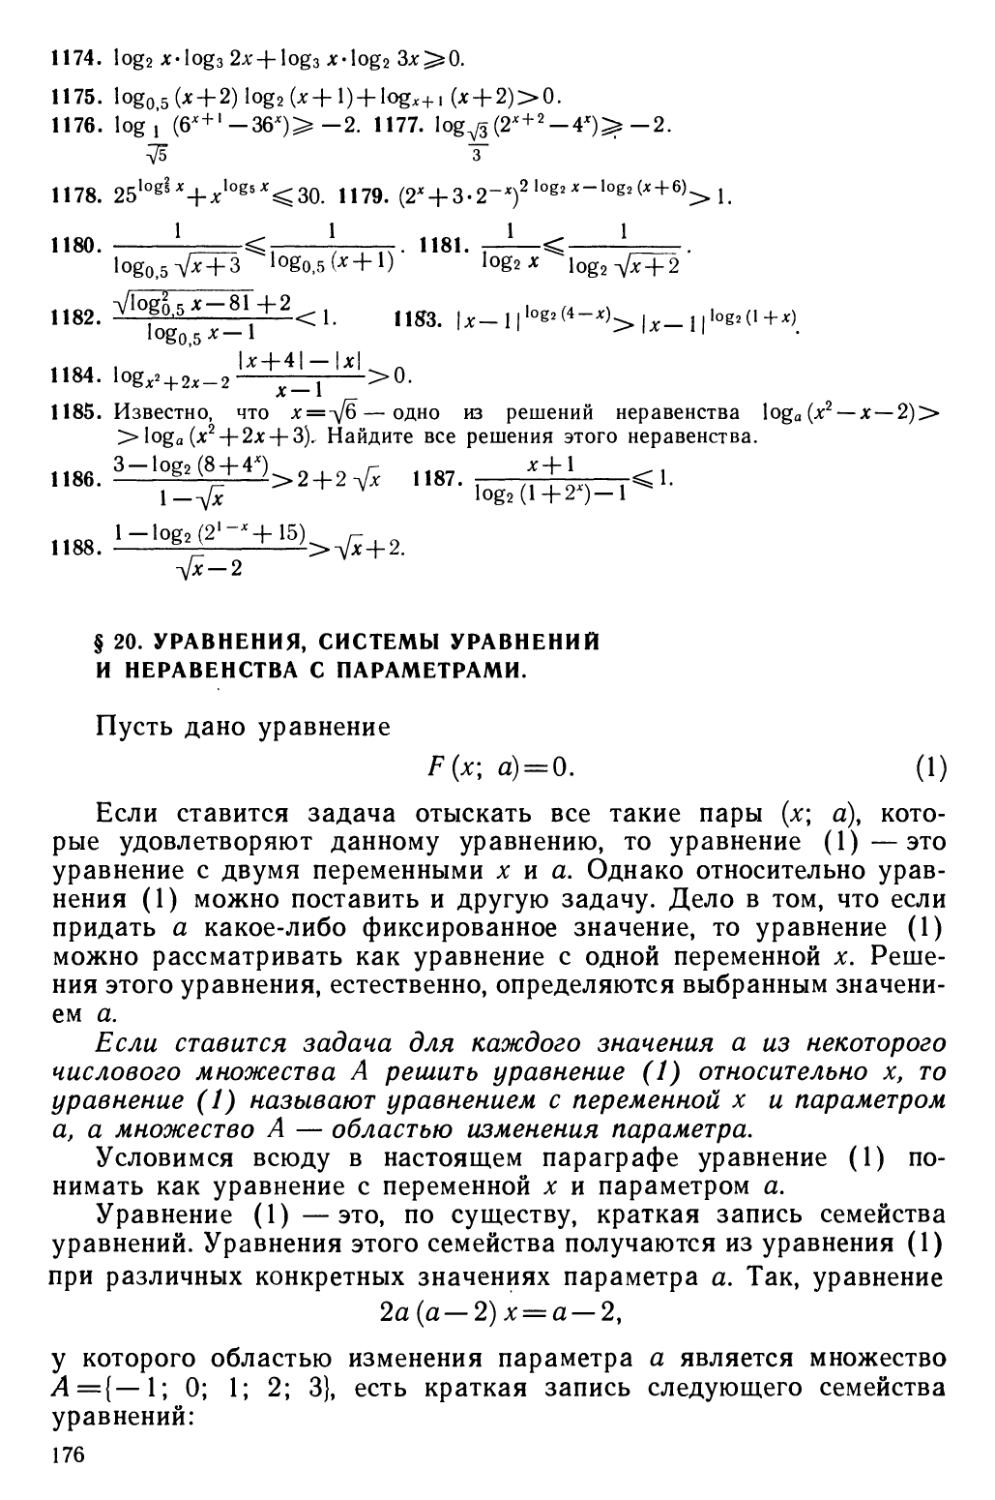 § 20 Уравнения, системы уравнений и неравенства с параметрами